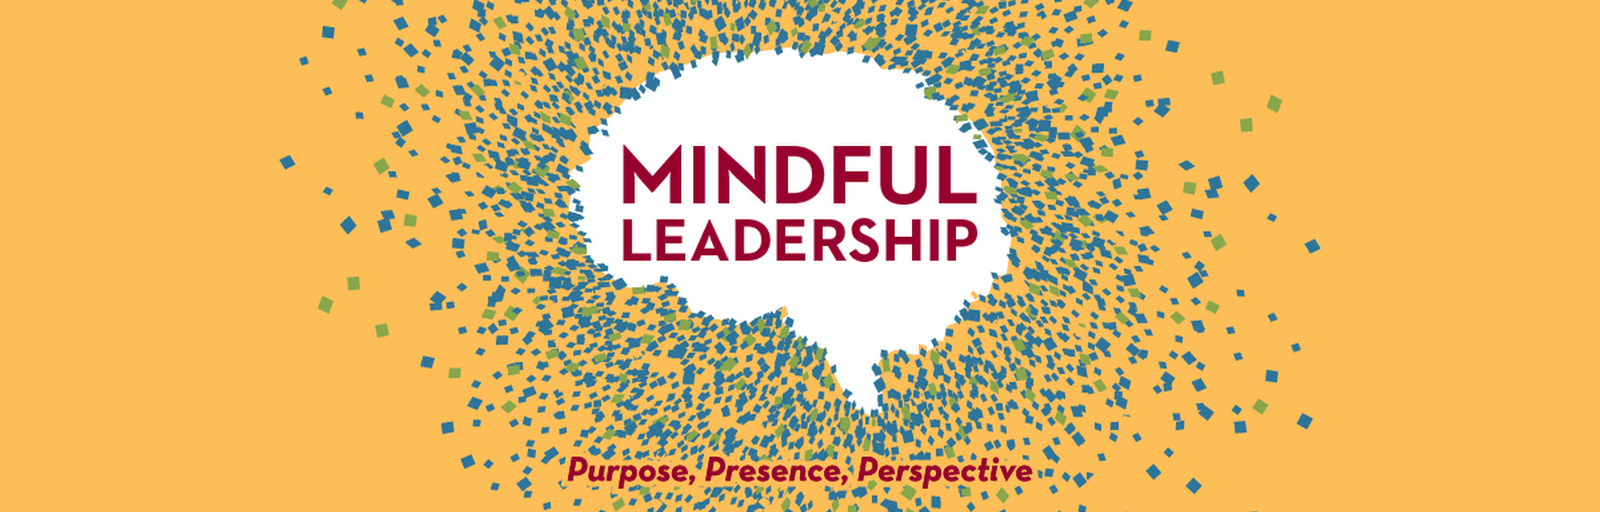 Mindful Leadership Conference logo